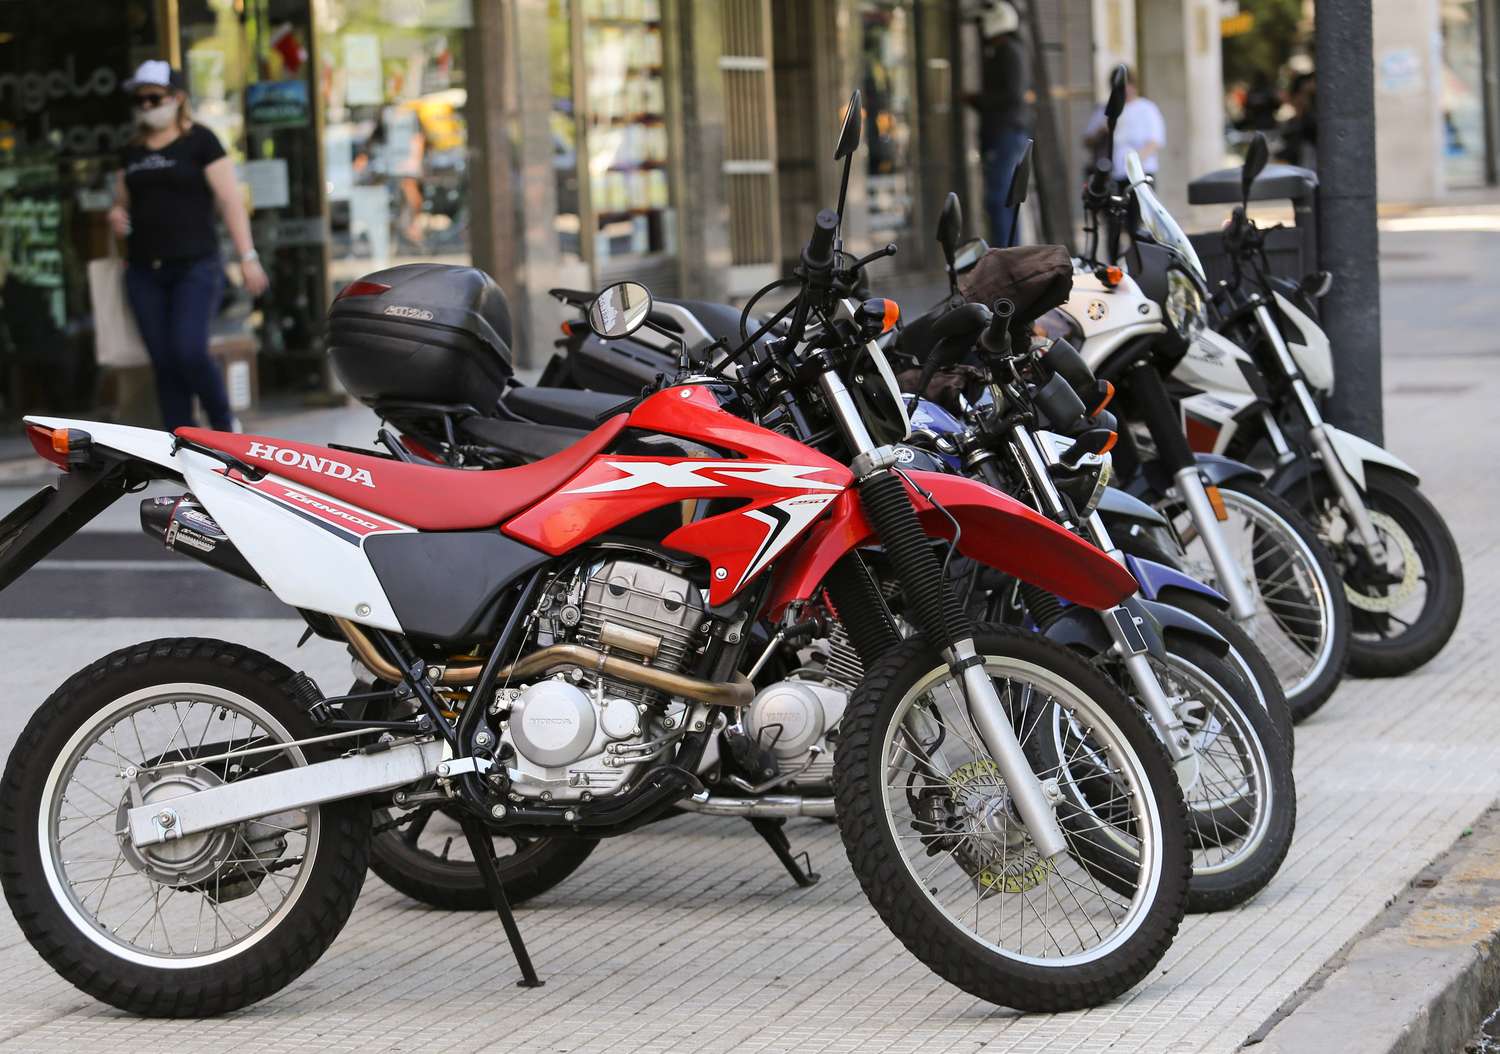 El patentamiento de motos cayó 16,9% en junio